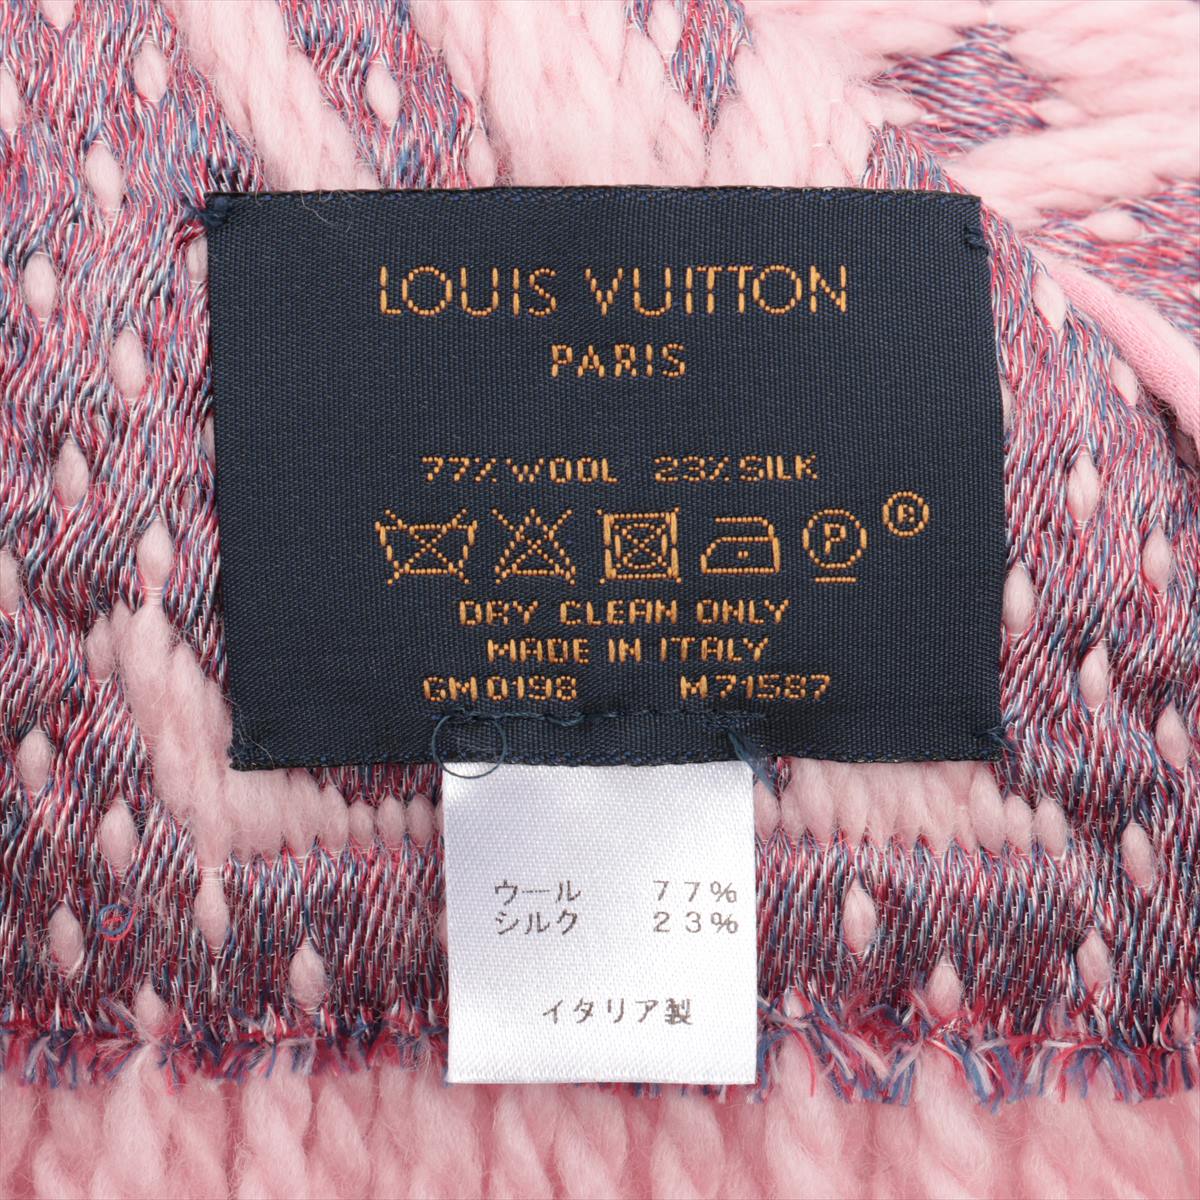 LouisLouis Vuitton　エシャルプ・ロゴマニア ア ラ フォリ　ピンク